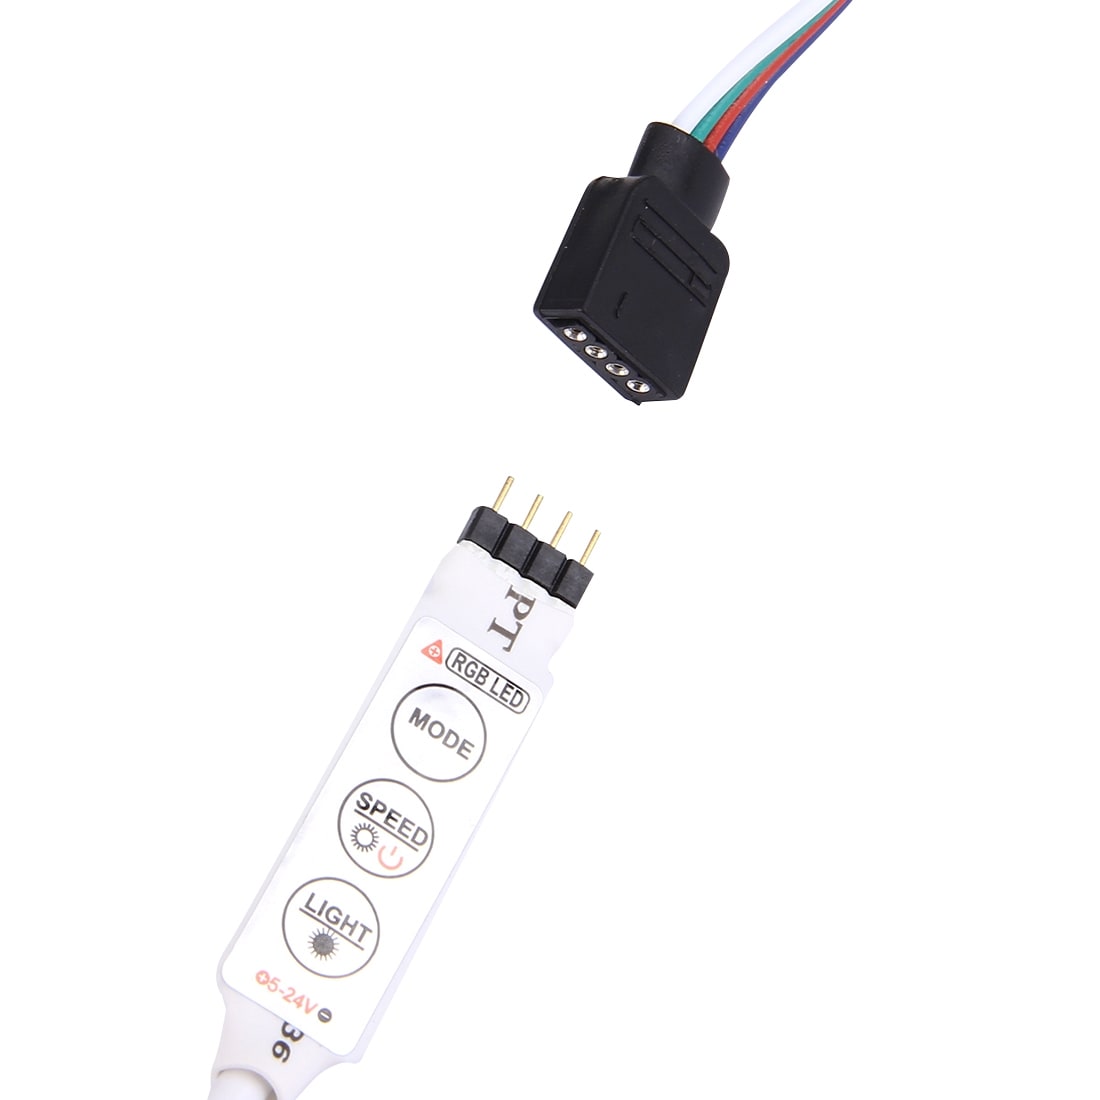 USB LED snoer 50cm met 20 verschillende lichteffecten